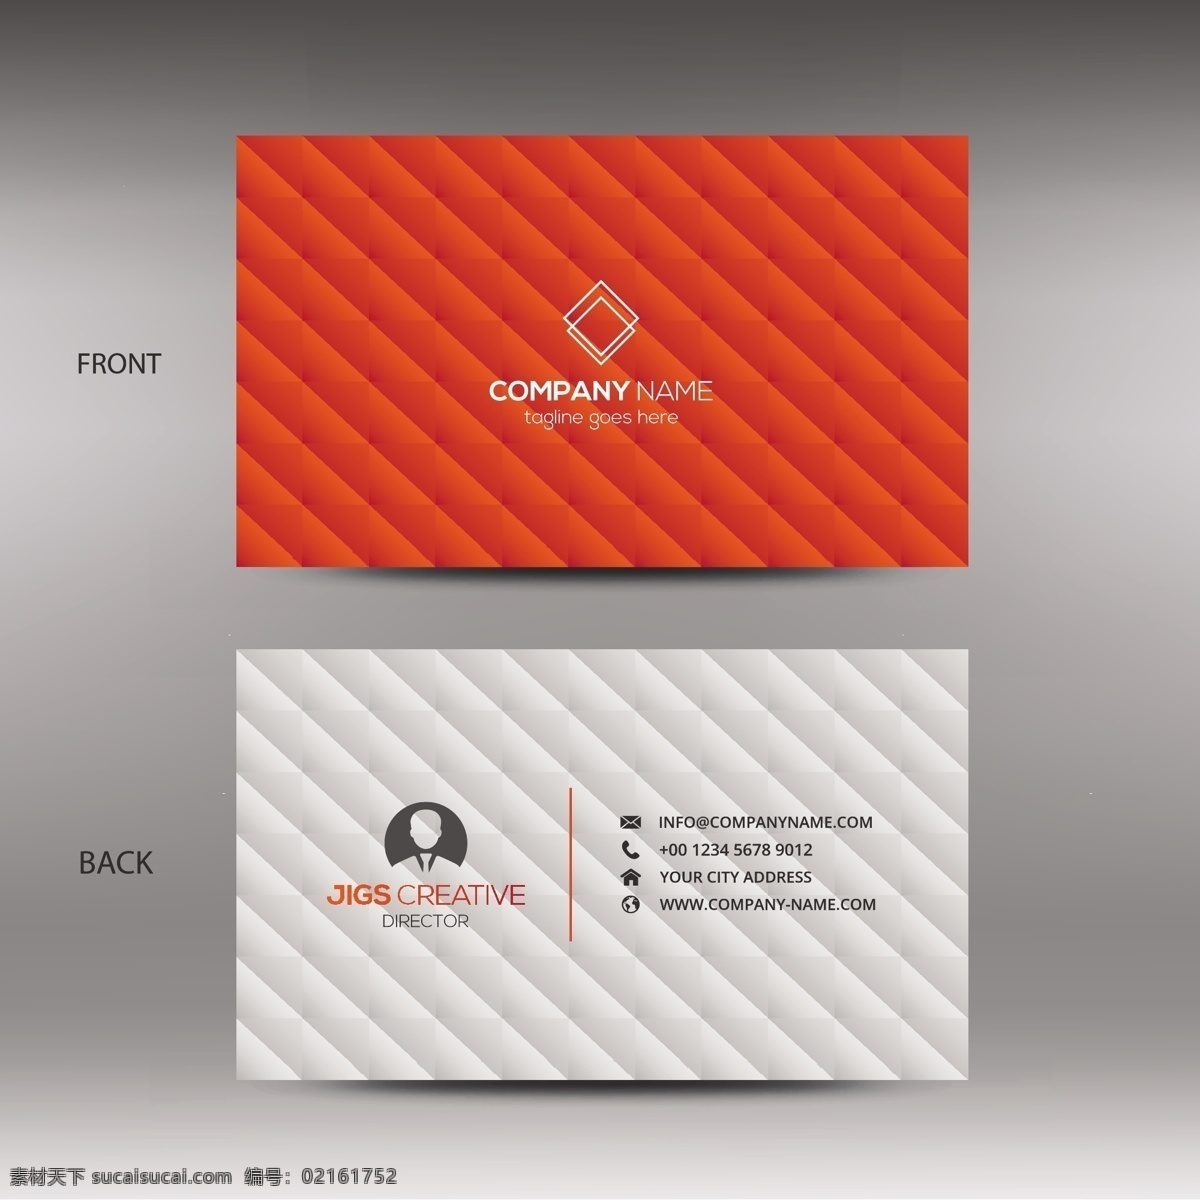 橙 灰色 商务 名片 商标 抽象 卡片 模板 办公室 橙色 展示 文具 公司 抽象标志 企业标识 品牌 现代 身份